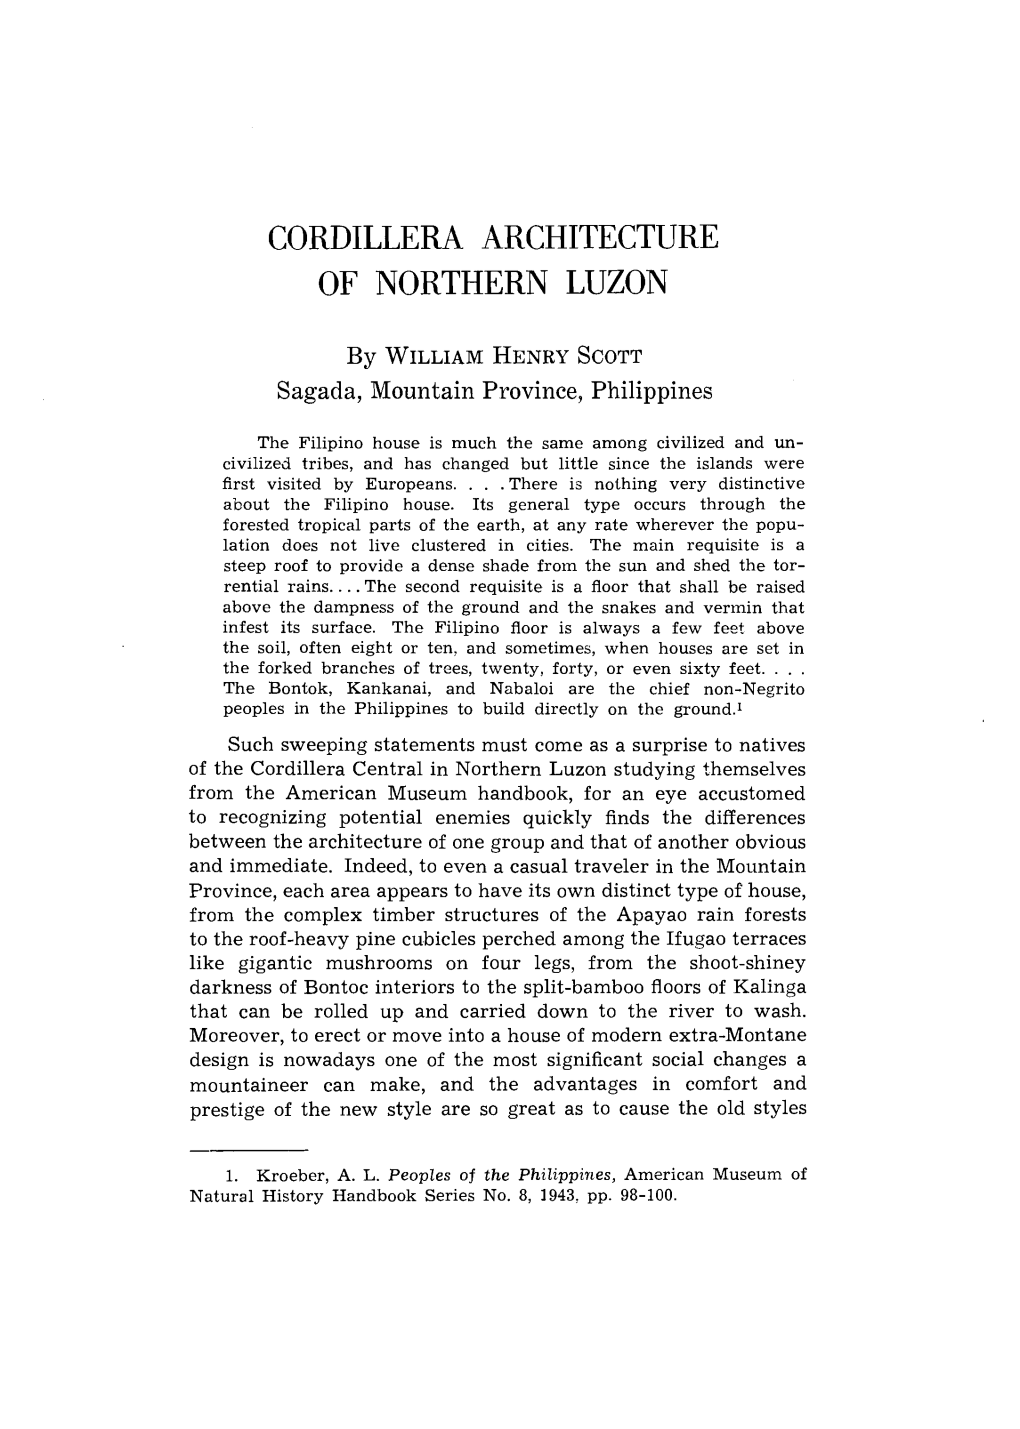 Cordillera Architecture of Northern Luzon